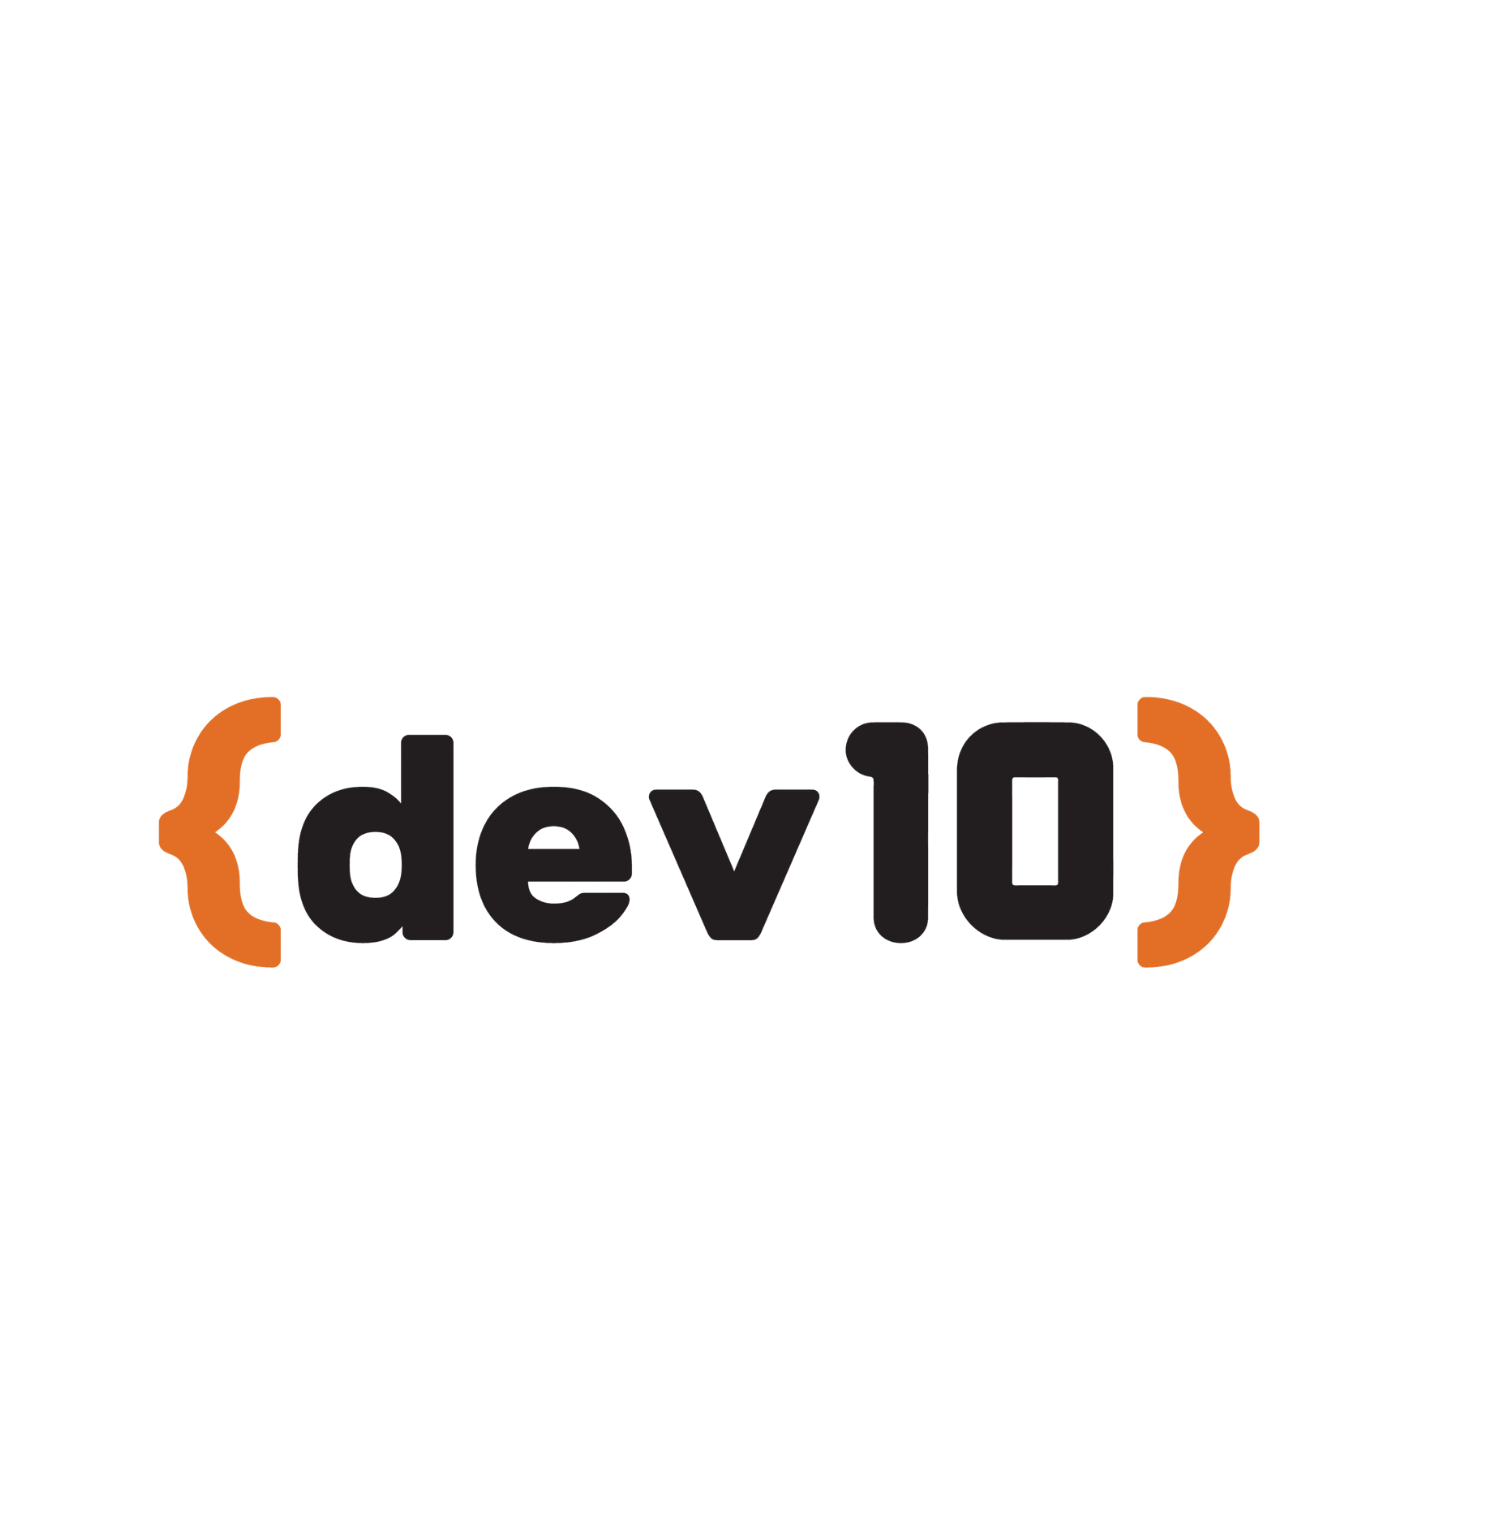 LARGE - Dev10 by Genesis10-1